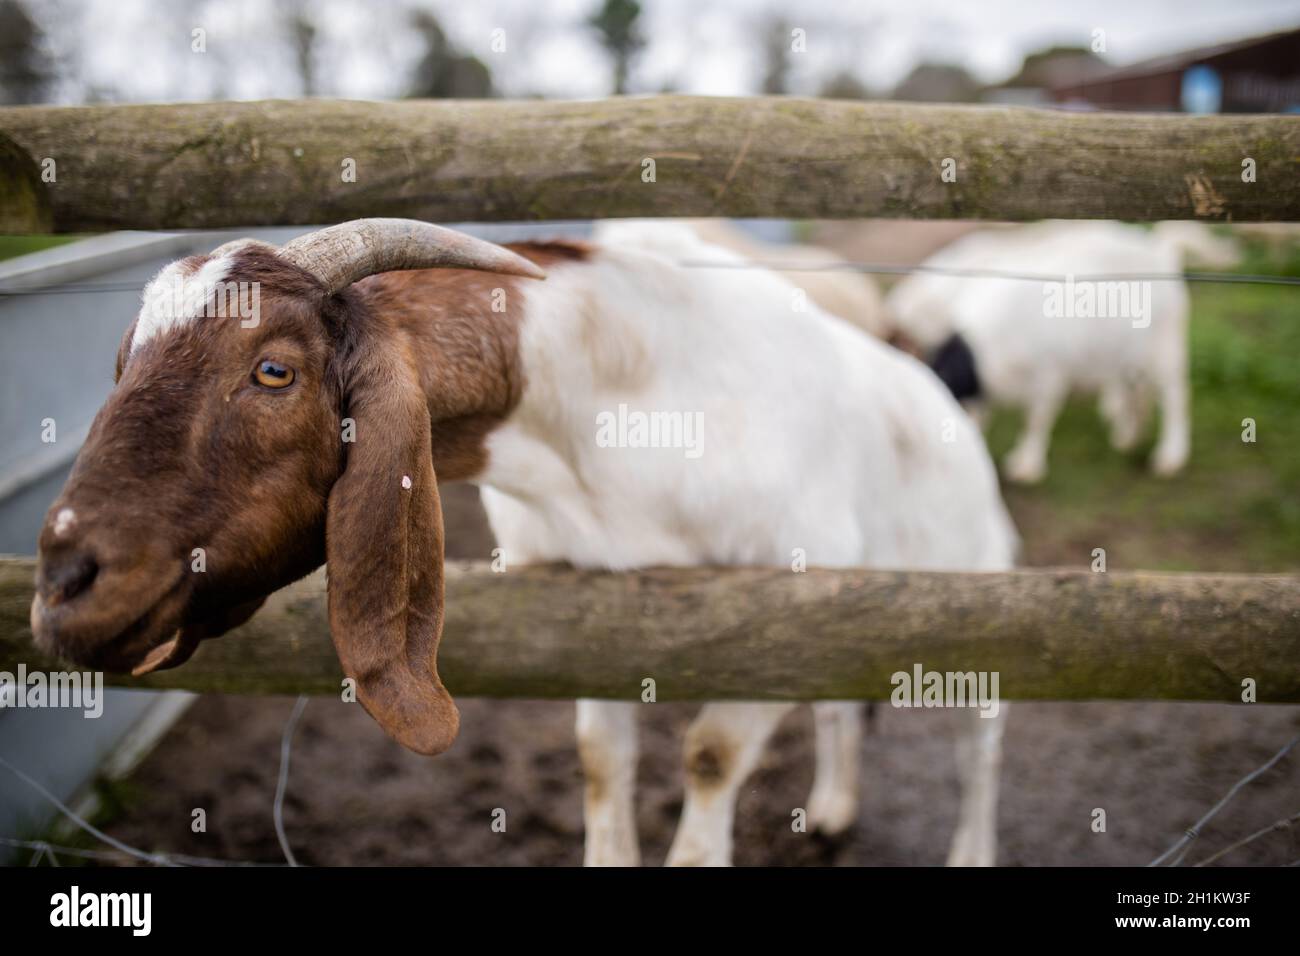 Capra cornuta bianca e marrone che si attacca la sua testa attraverso una recinzione in una fattoria. Capre bianche curiose che mangiano grano. Animali da fattoria a portata aperta Foto Stock